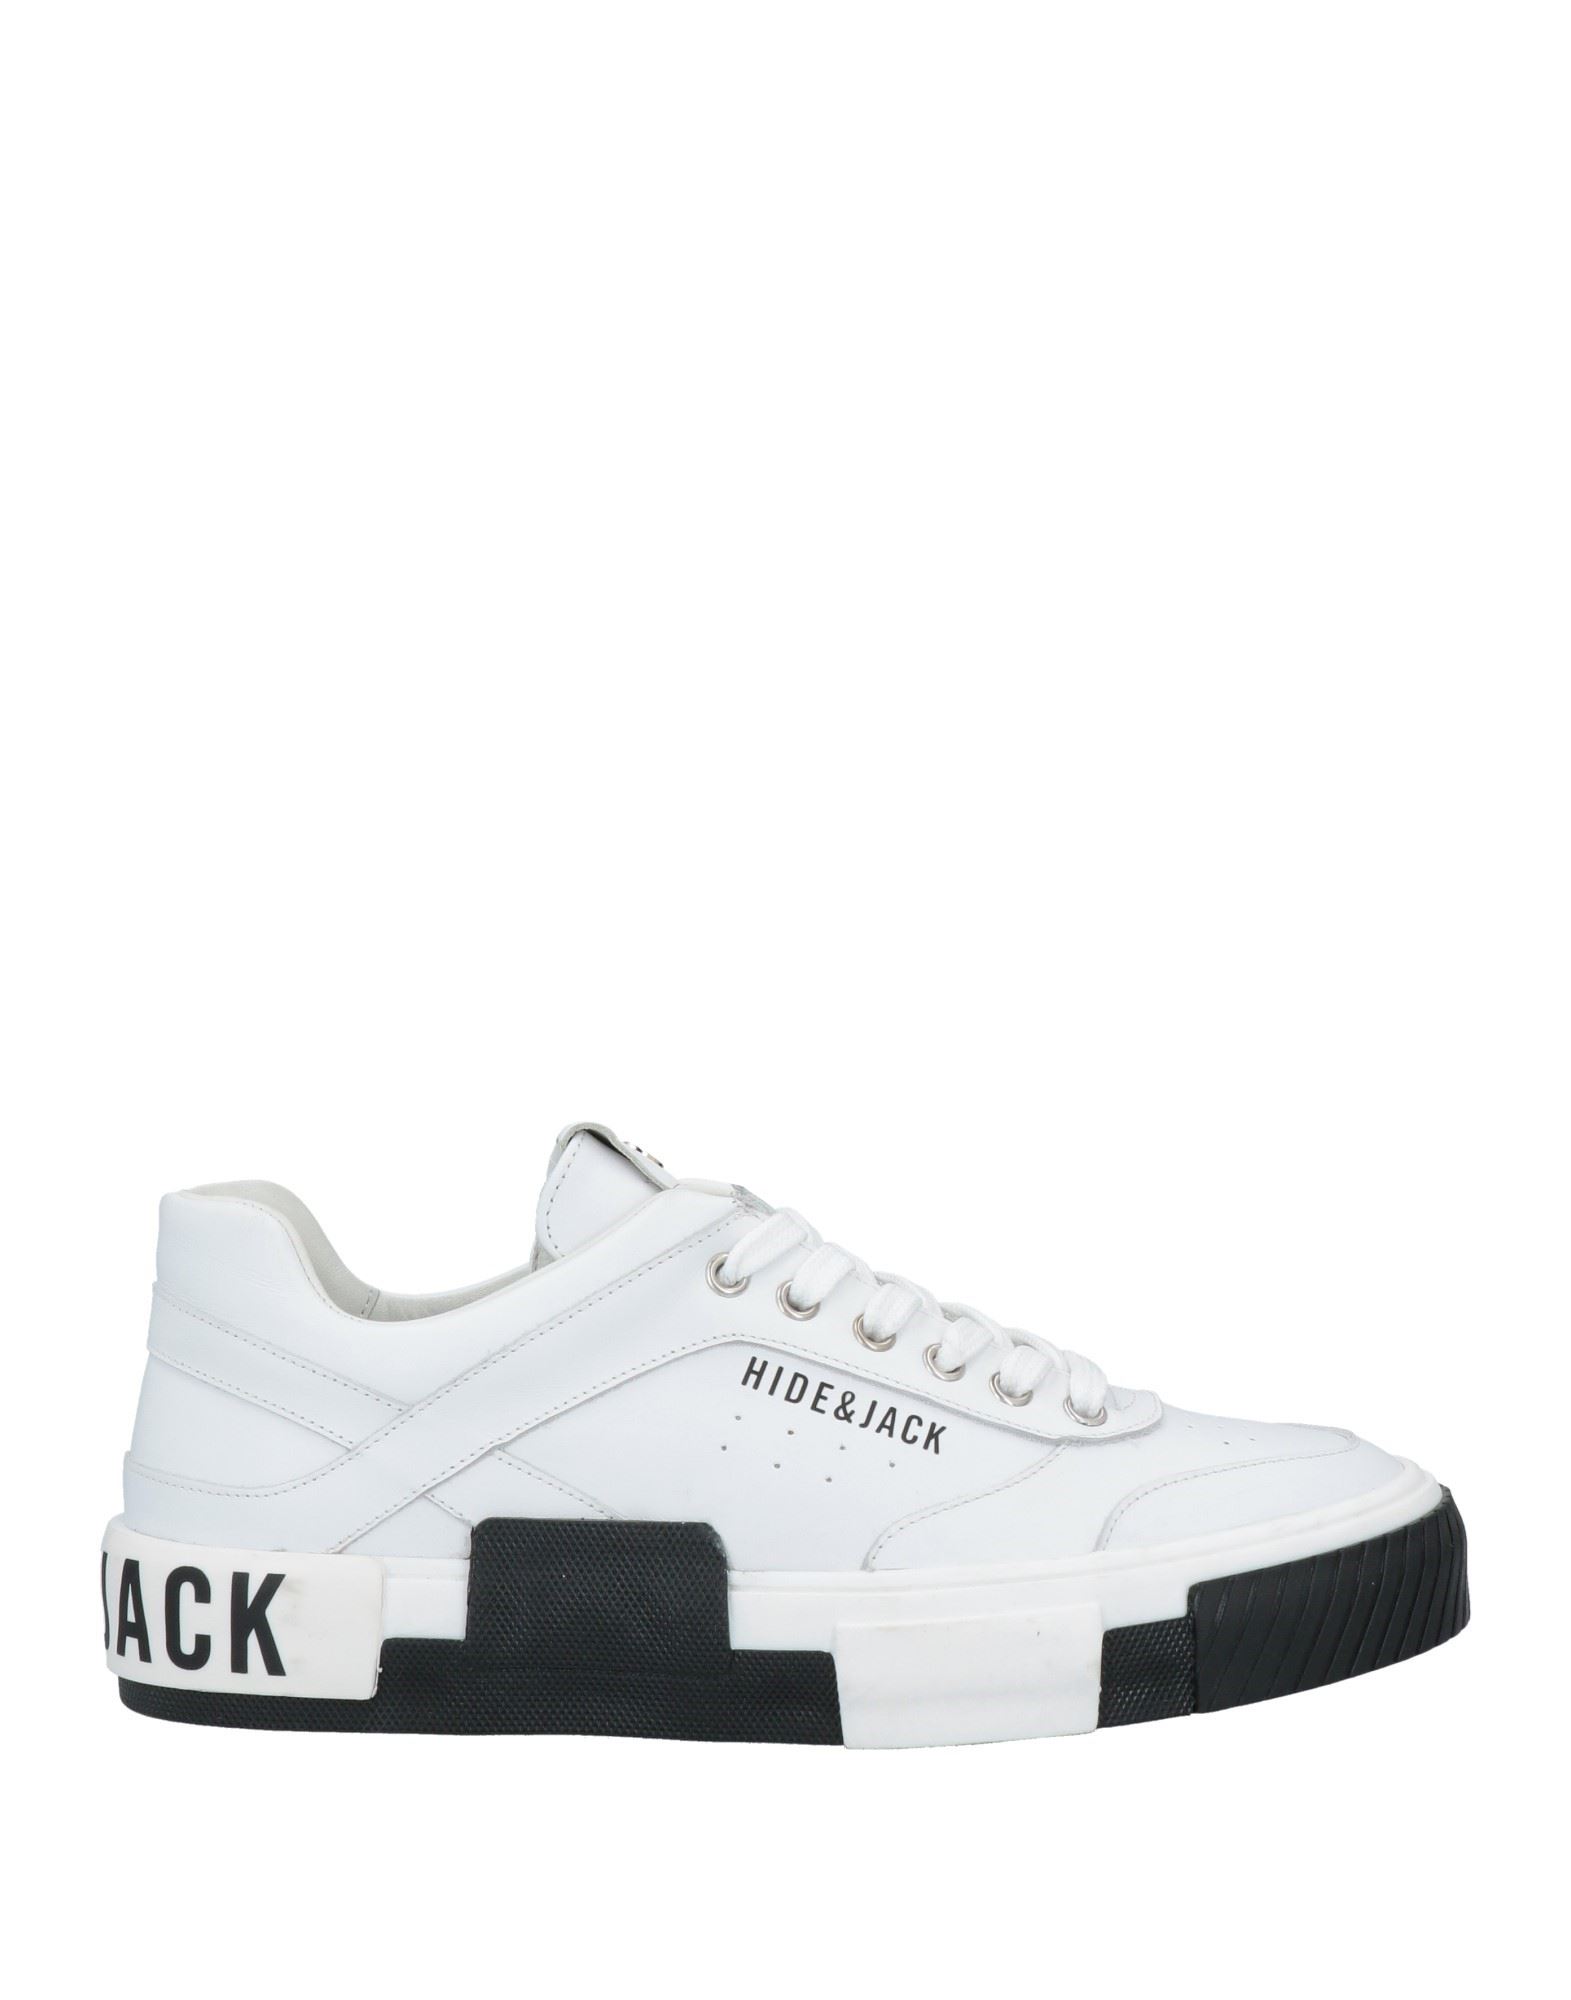 Hide & Jack Sneakers In White